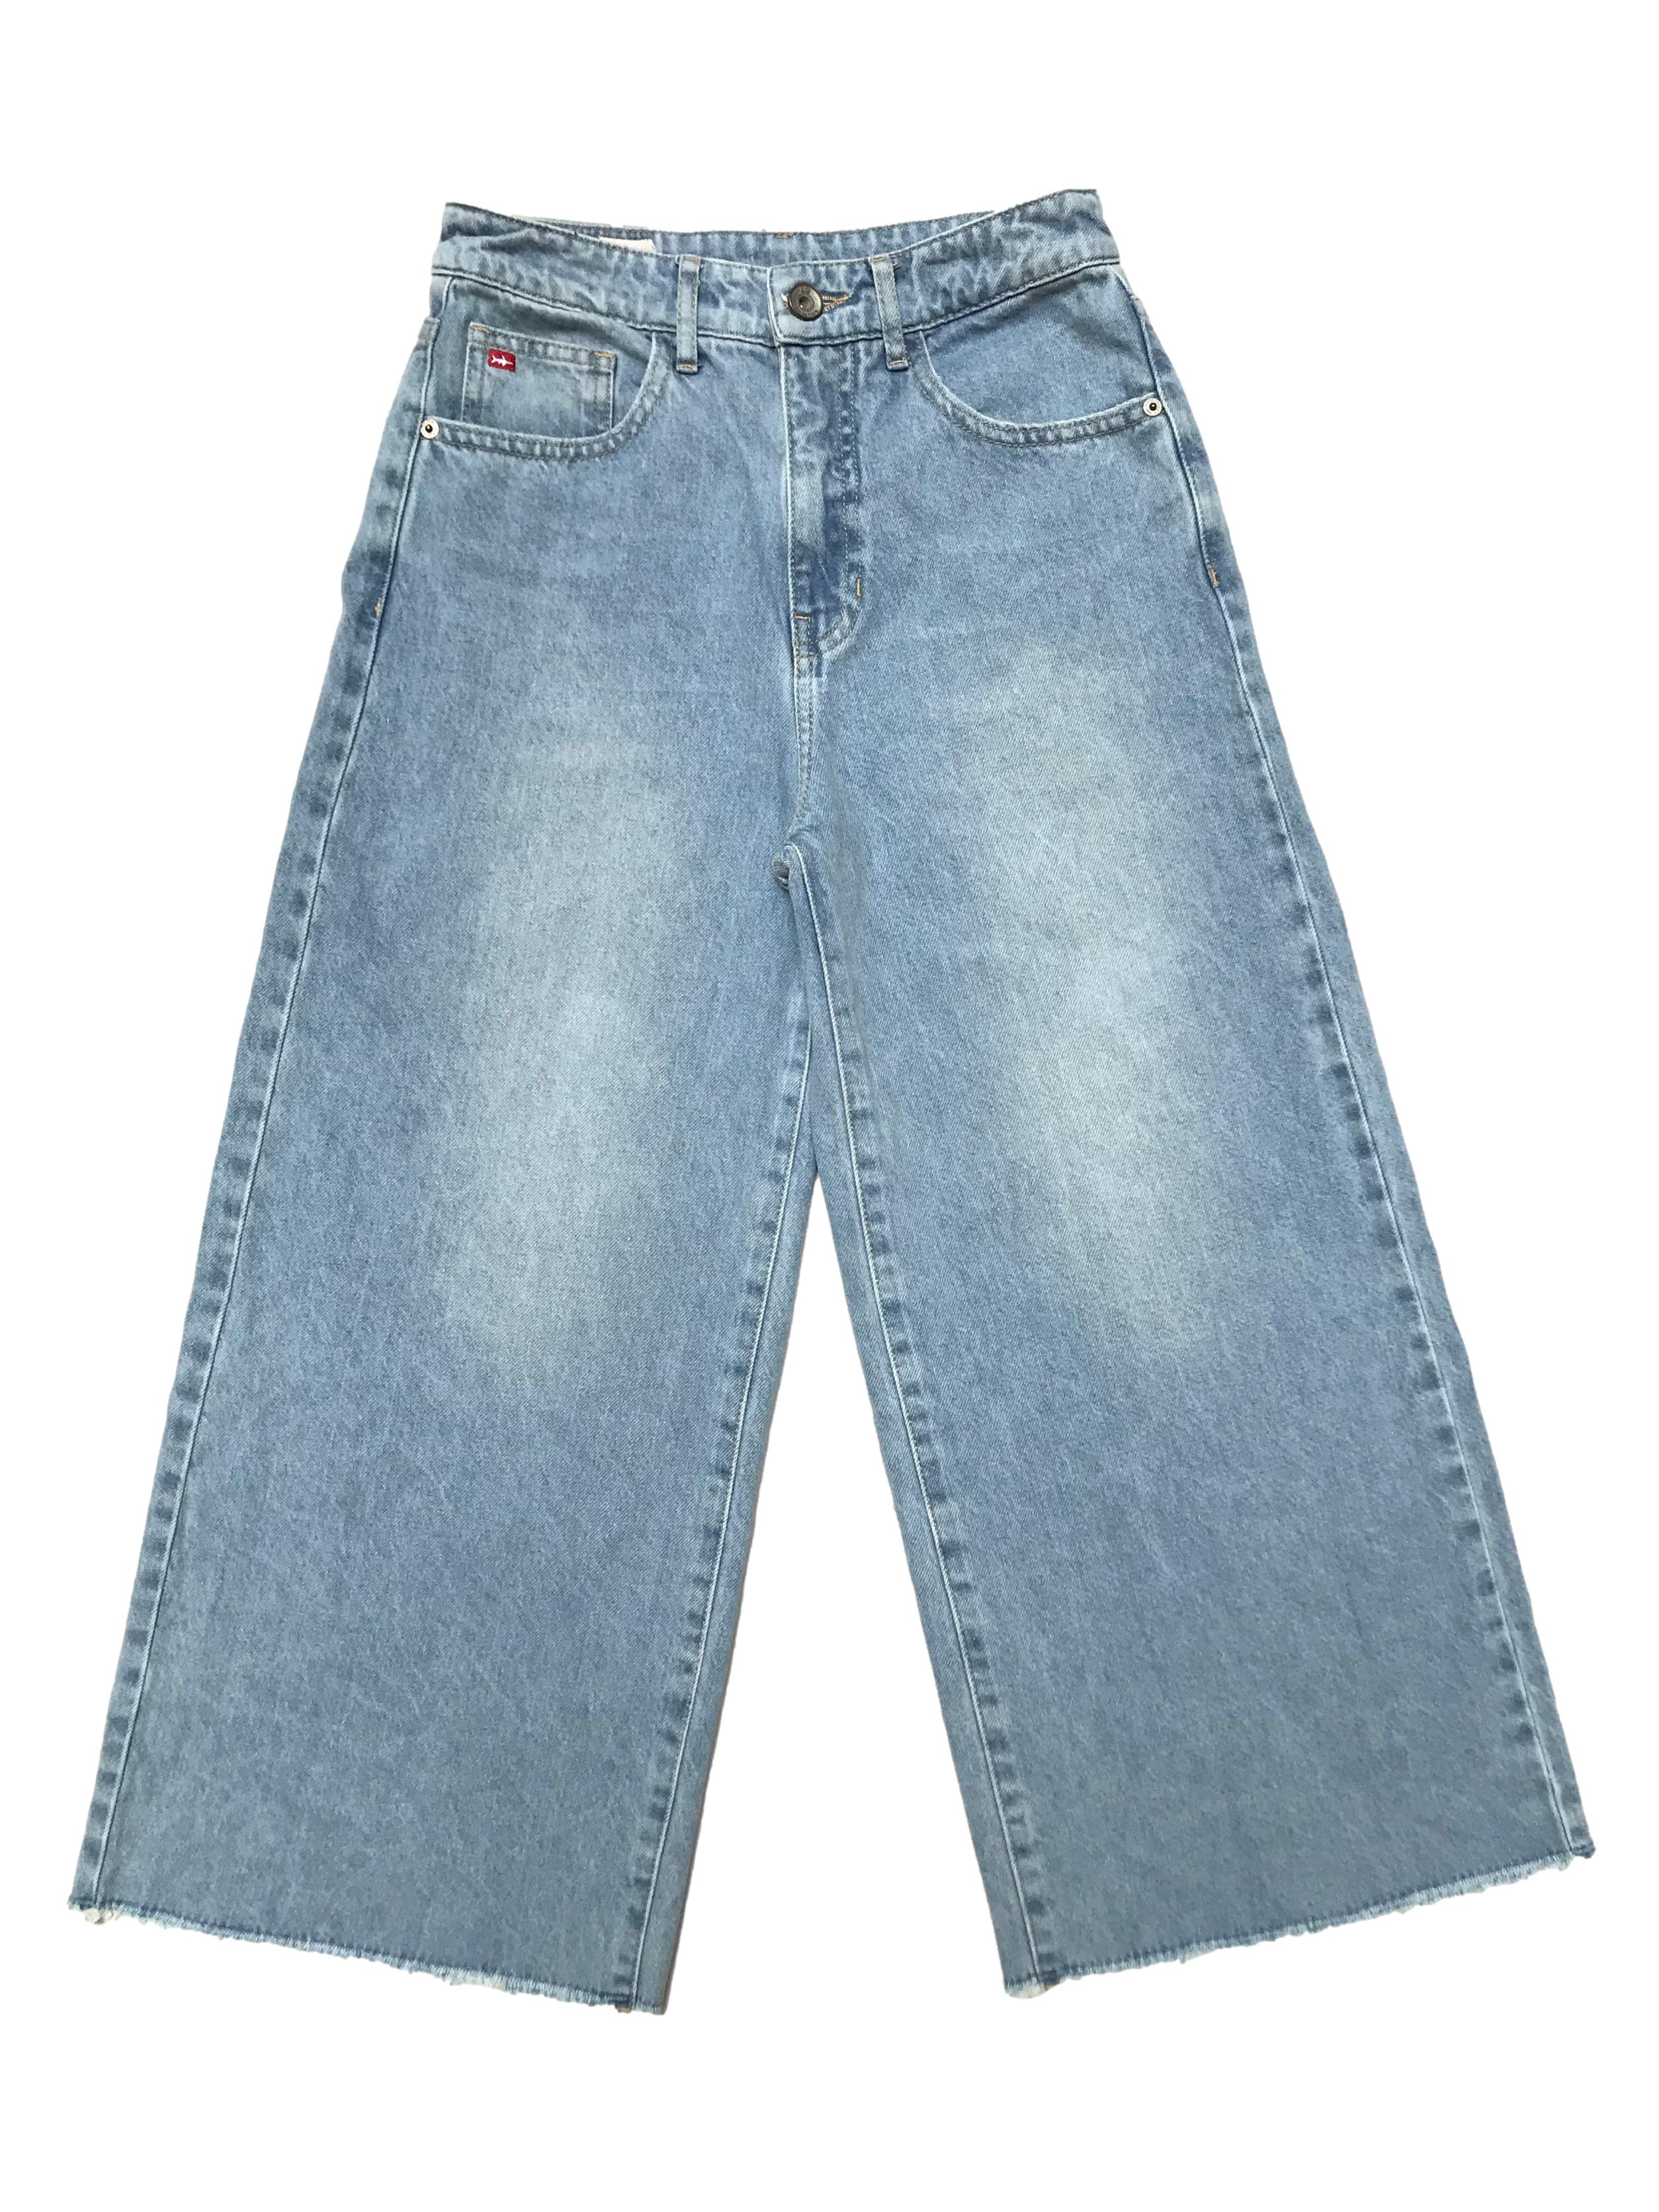 Culotte Kidsmadehere de jean rígido, wide leg con basta desflecada, tiene bolsillos laterales y posteriores. Cintura 62cm Largo 84cm. Precio original S/ 159